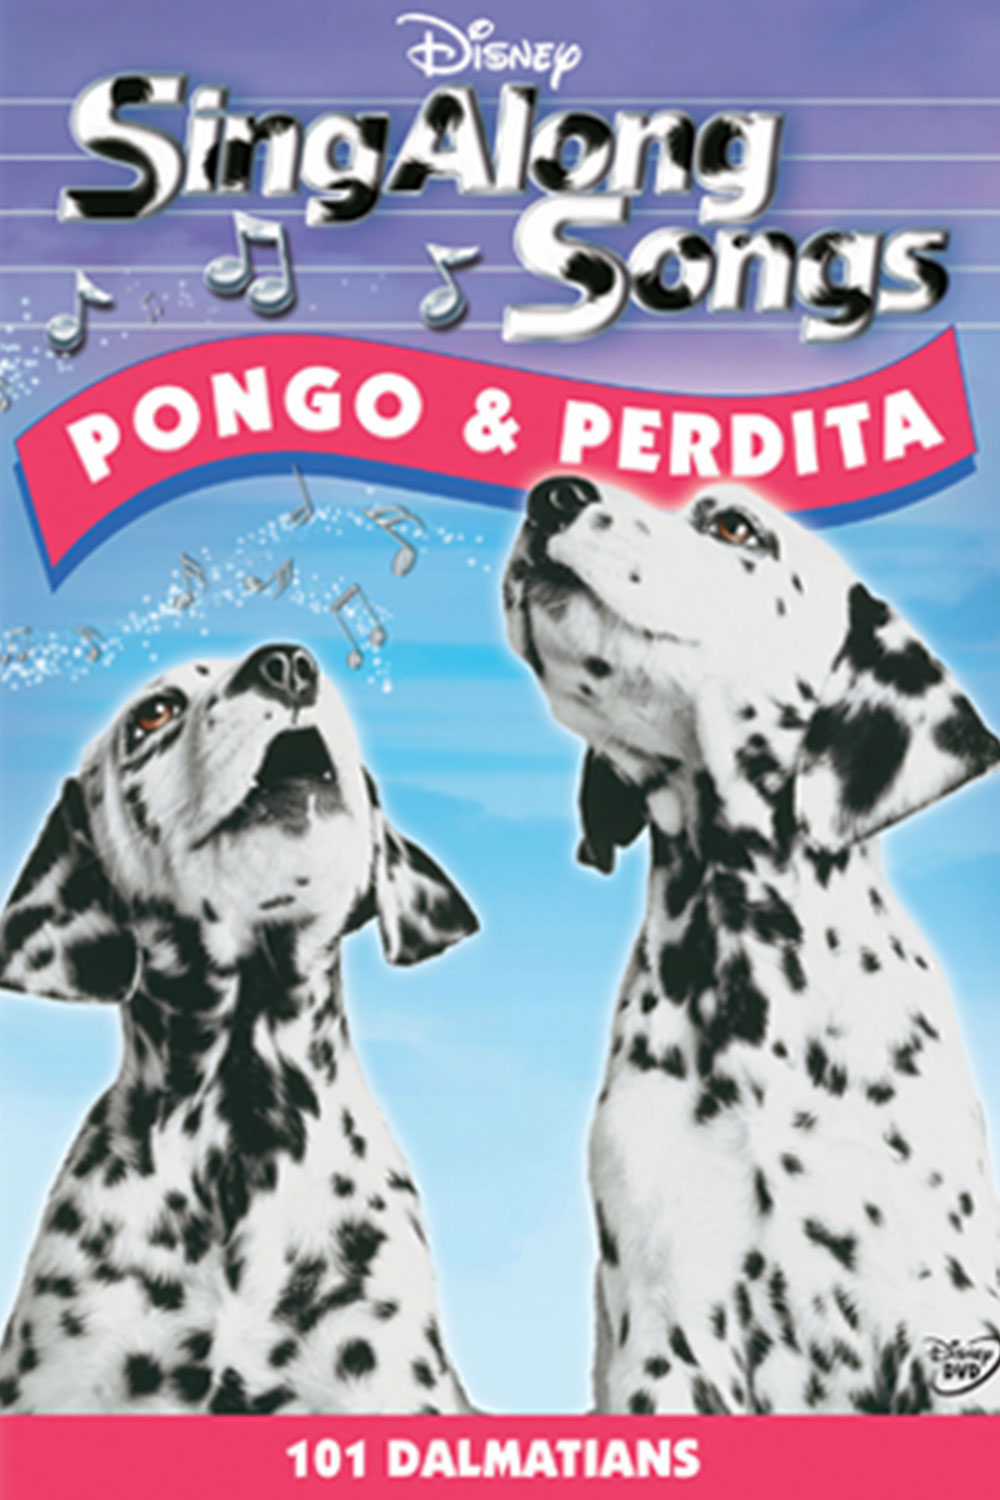 pongo and perdita sing along songs kisscartoon